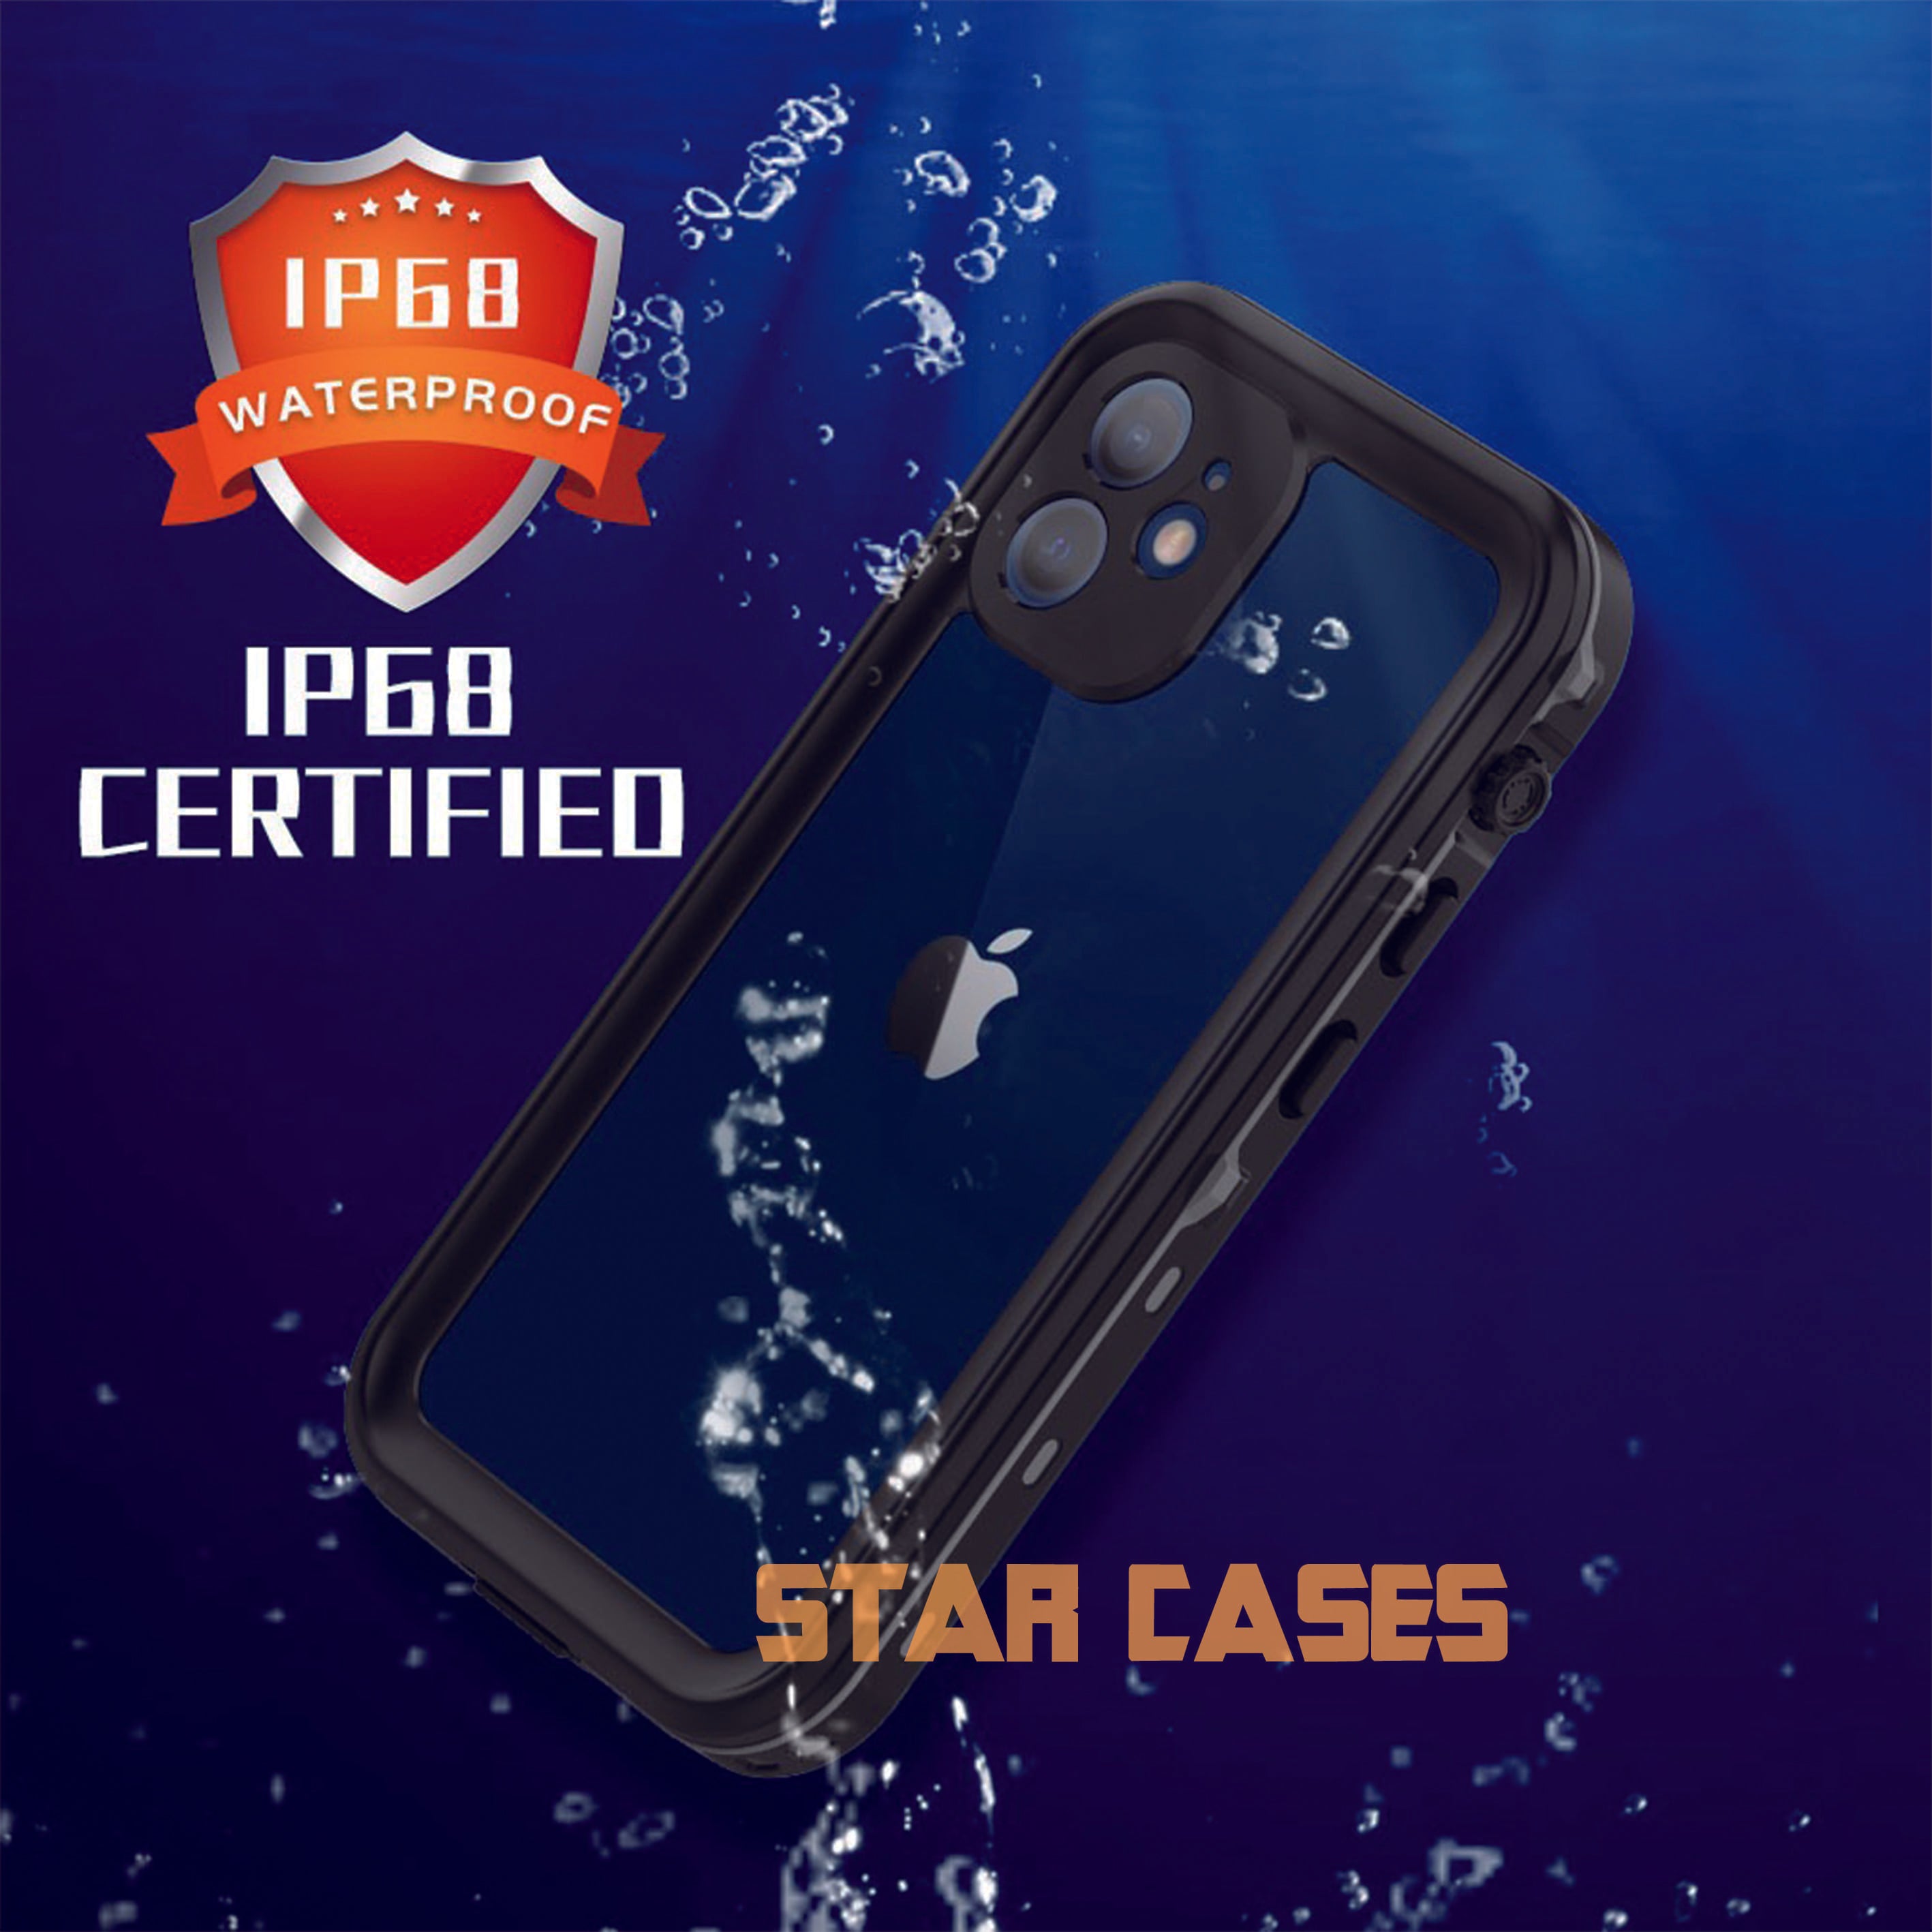 iPhone X&XS Waterproof Shockproof Case